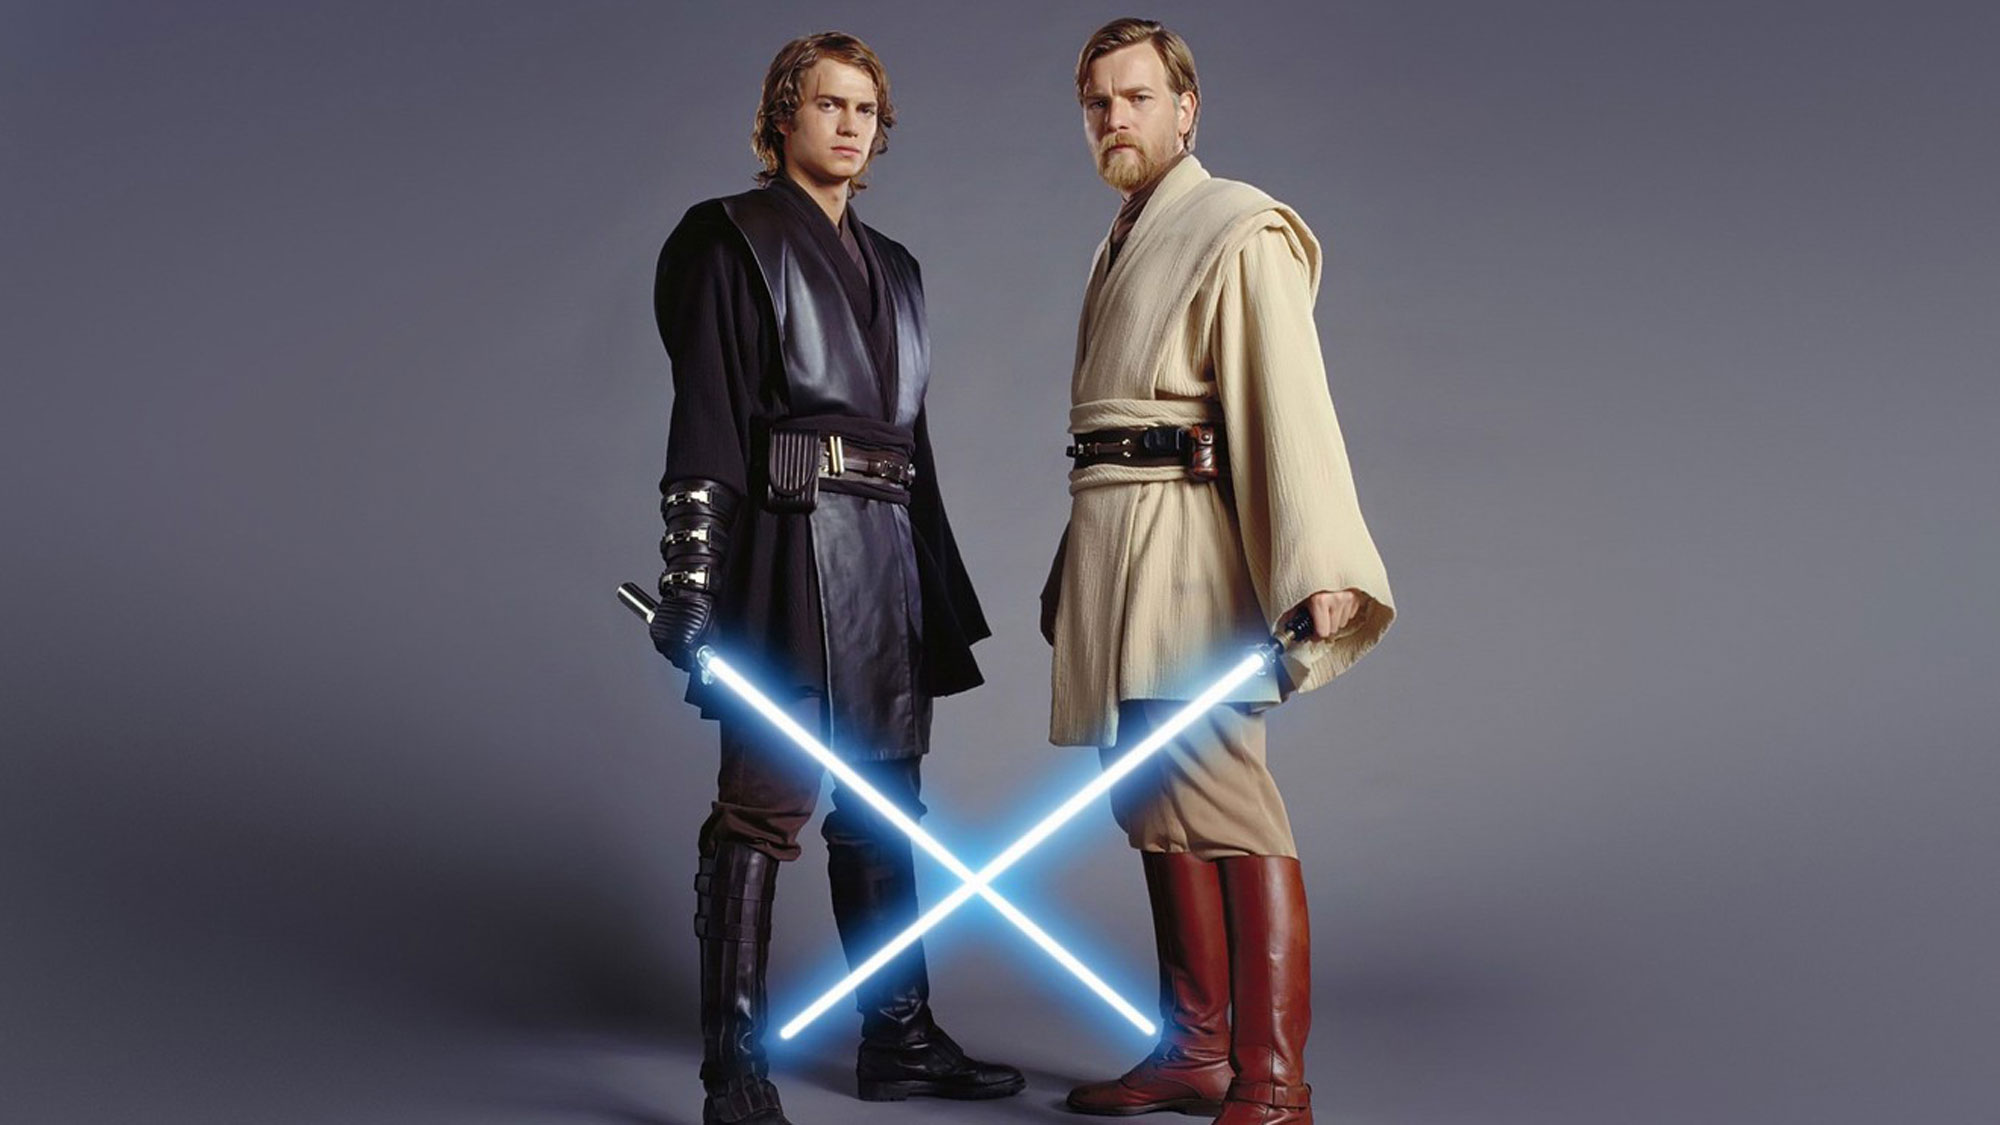 Obi Wan Kenobi On Disney Plus Hayden Christensen Returns As Darth Vader Tom S Guide